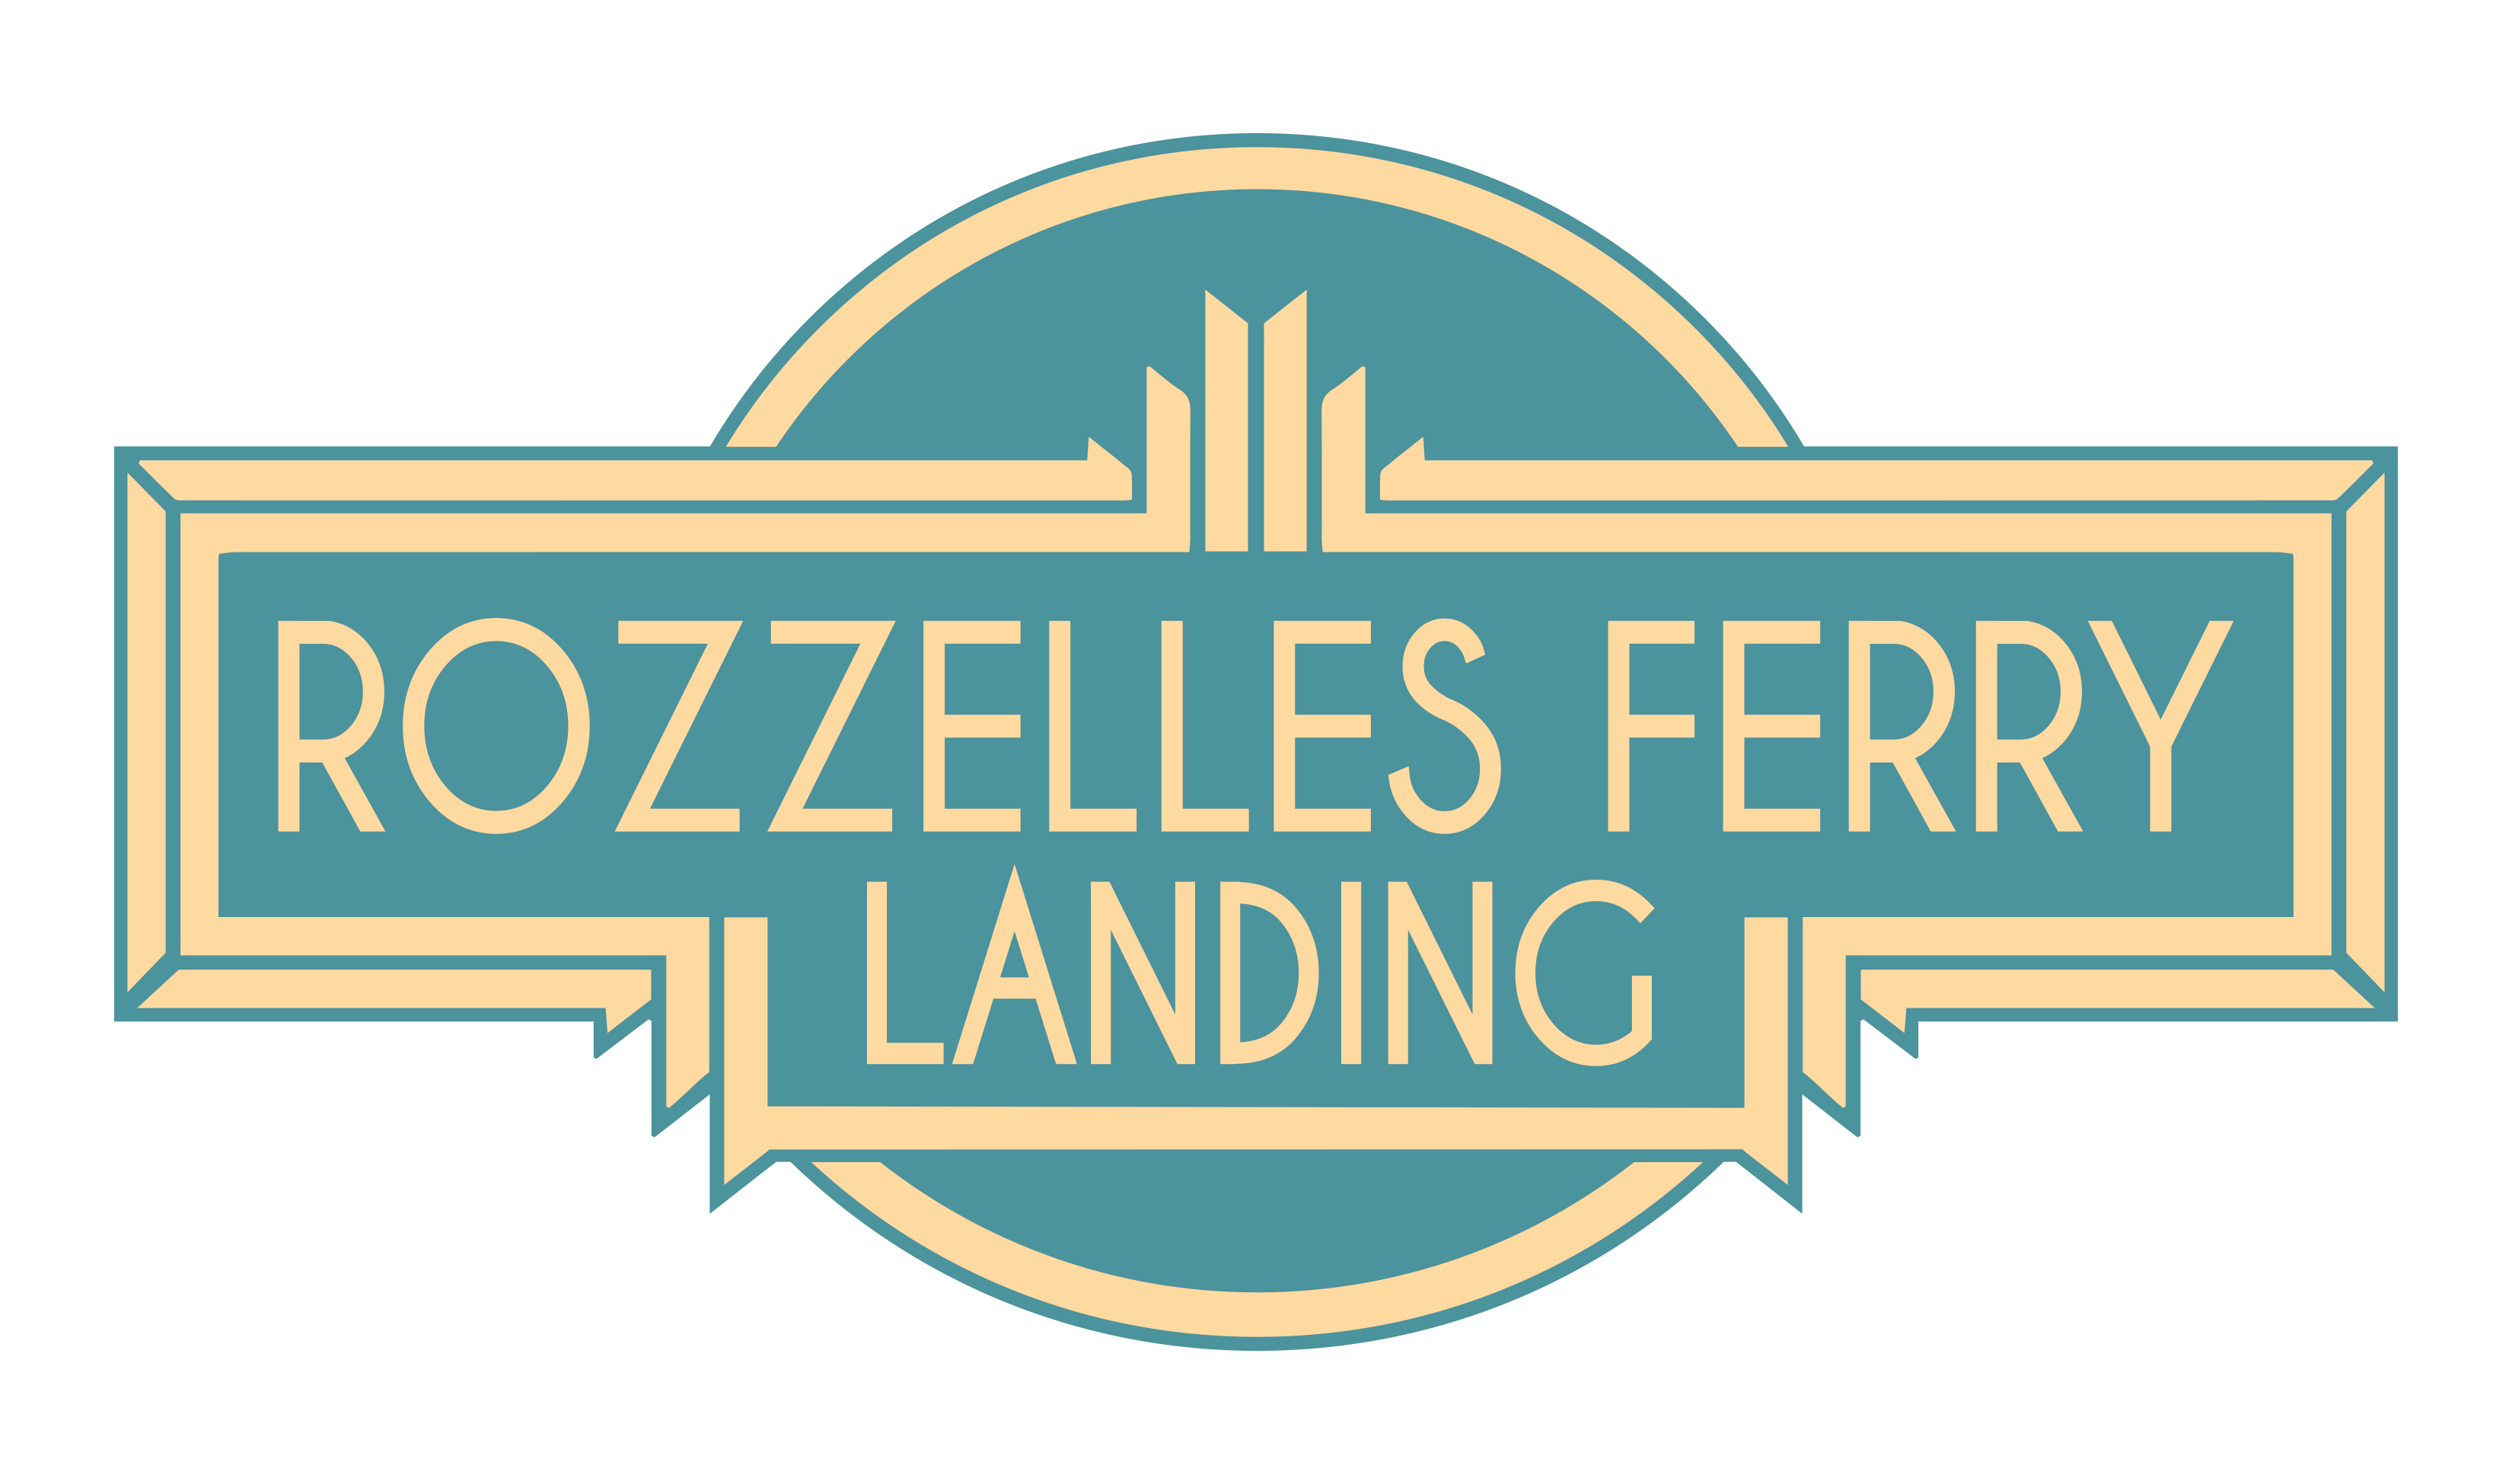 Rozzelles Ferry Landing